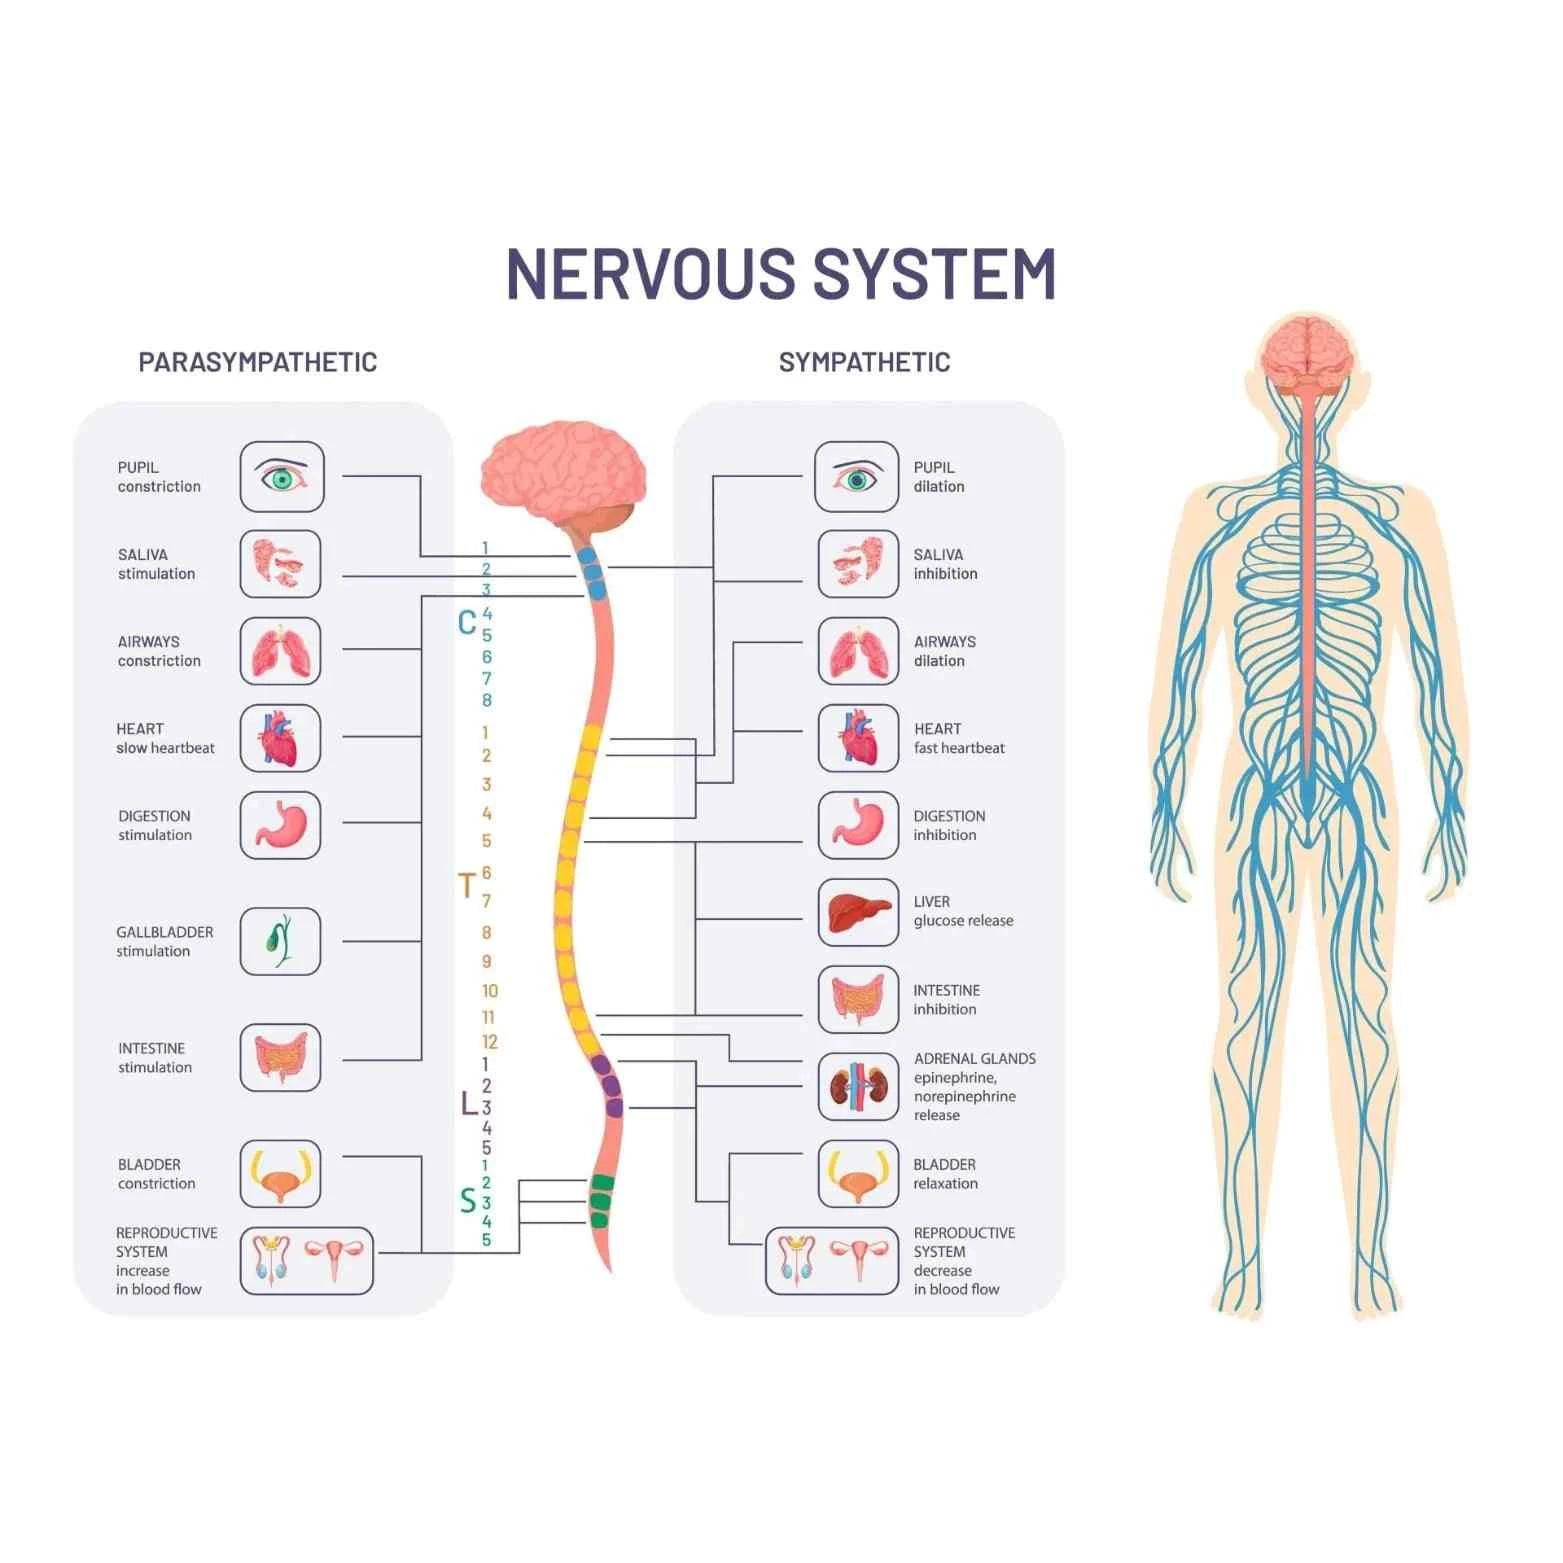 Nervous System image